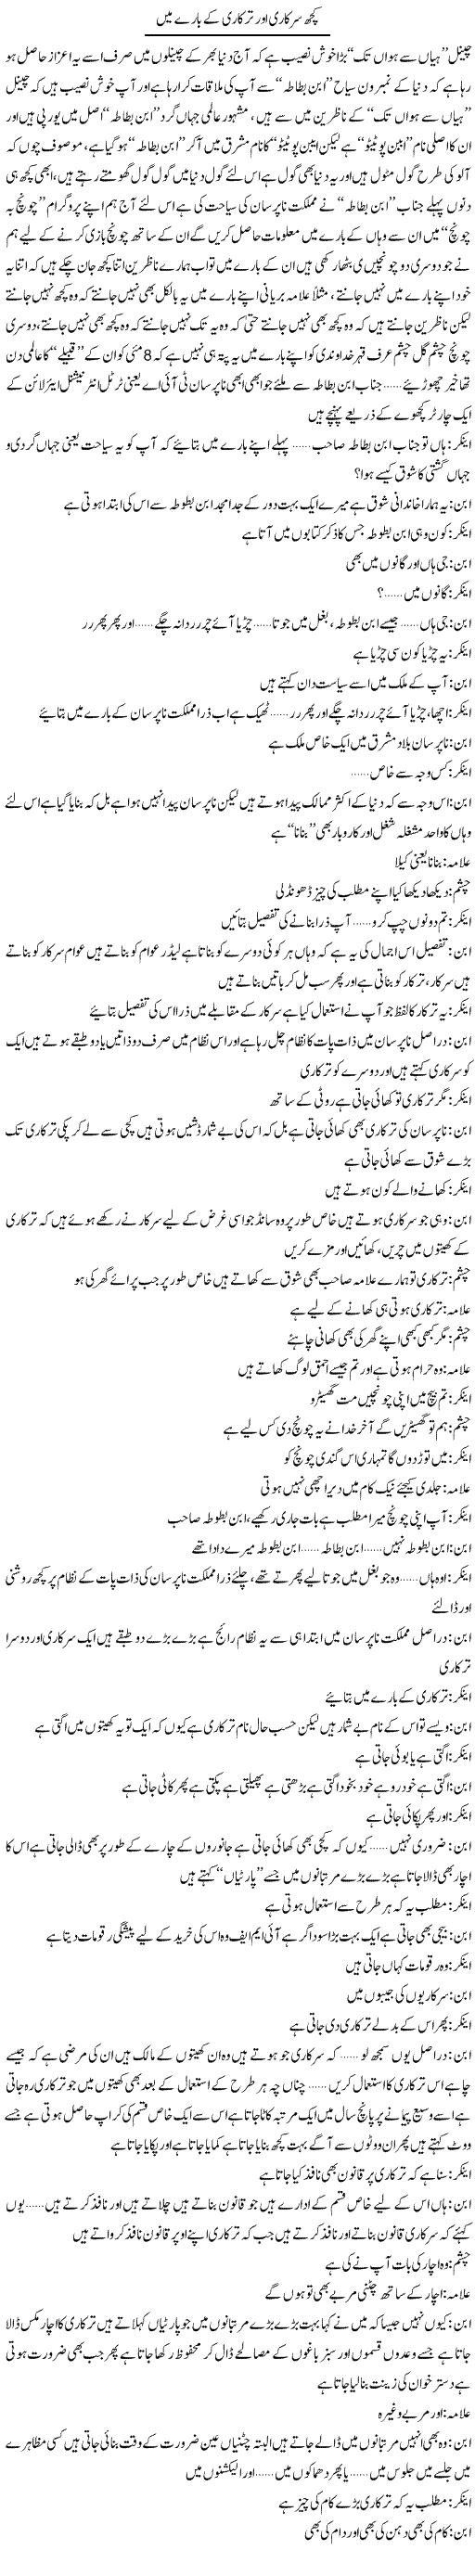 Kuch Sarkari Our Tarkari K Bare Main | Saad Ullah Jan Barq | Daily Urdu Columns